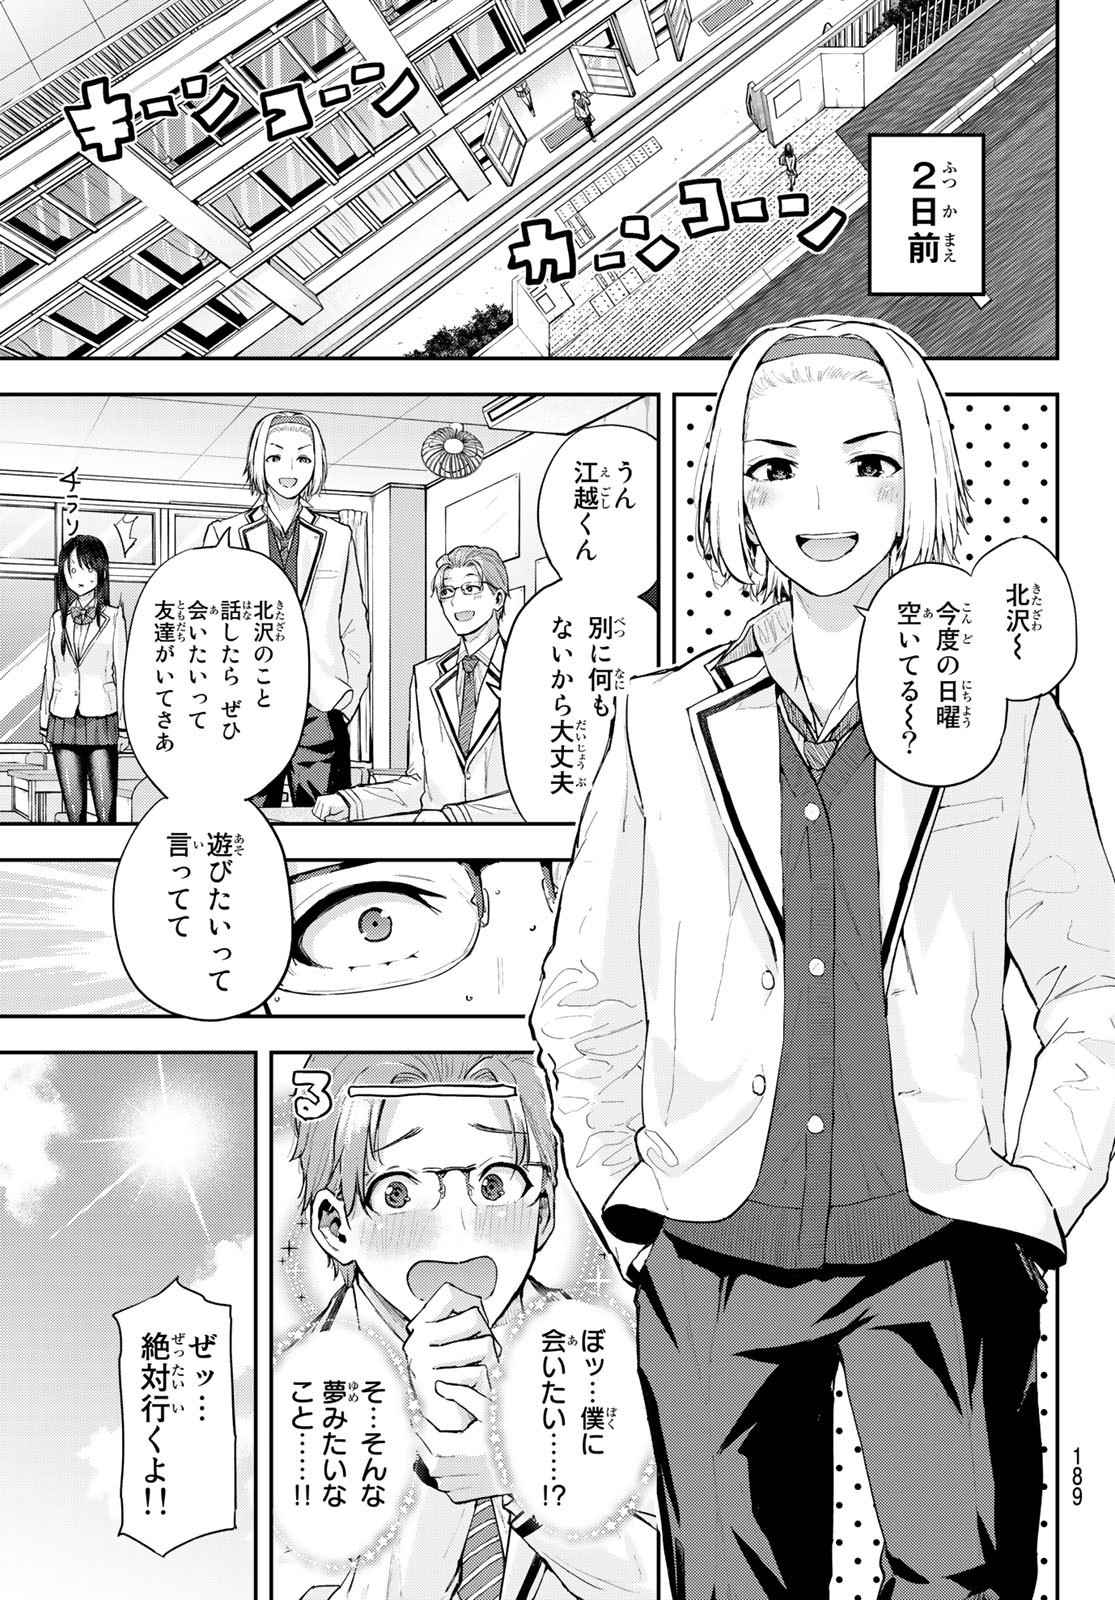 Kitazawa-kun wa A Class - Chapter 009 - Page 3